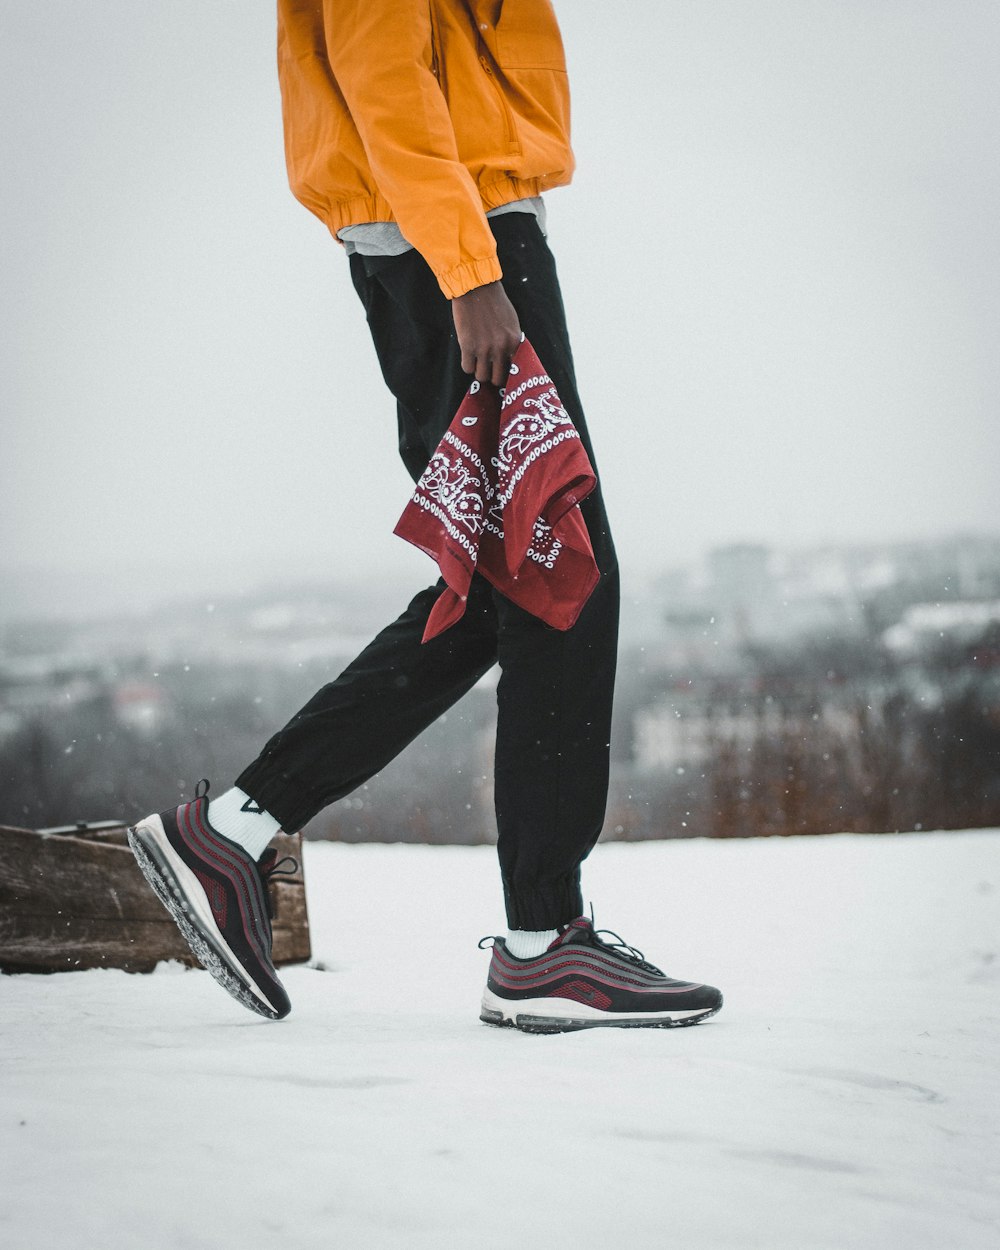 昼間、茶色の丸太の近くで赤と白のペイズリー柄のハンカチを持って雪の上を歩く男性